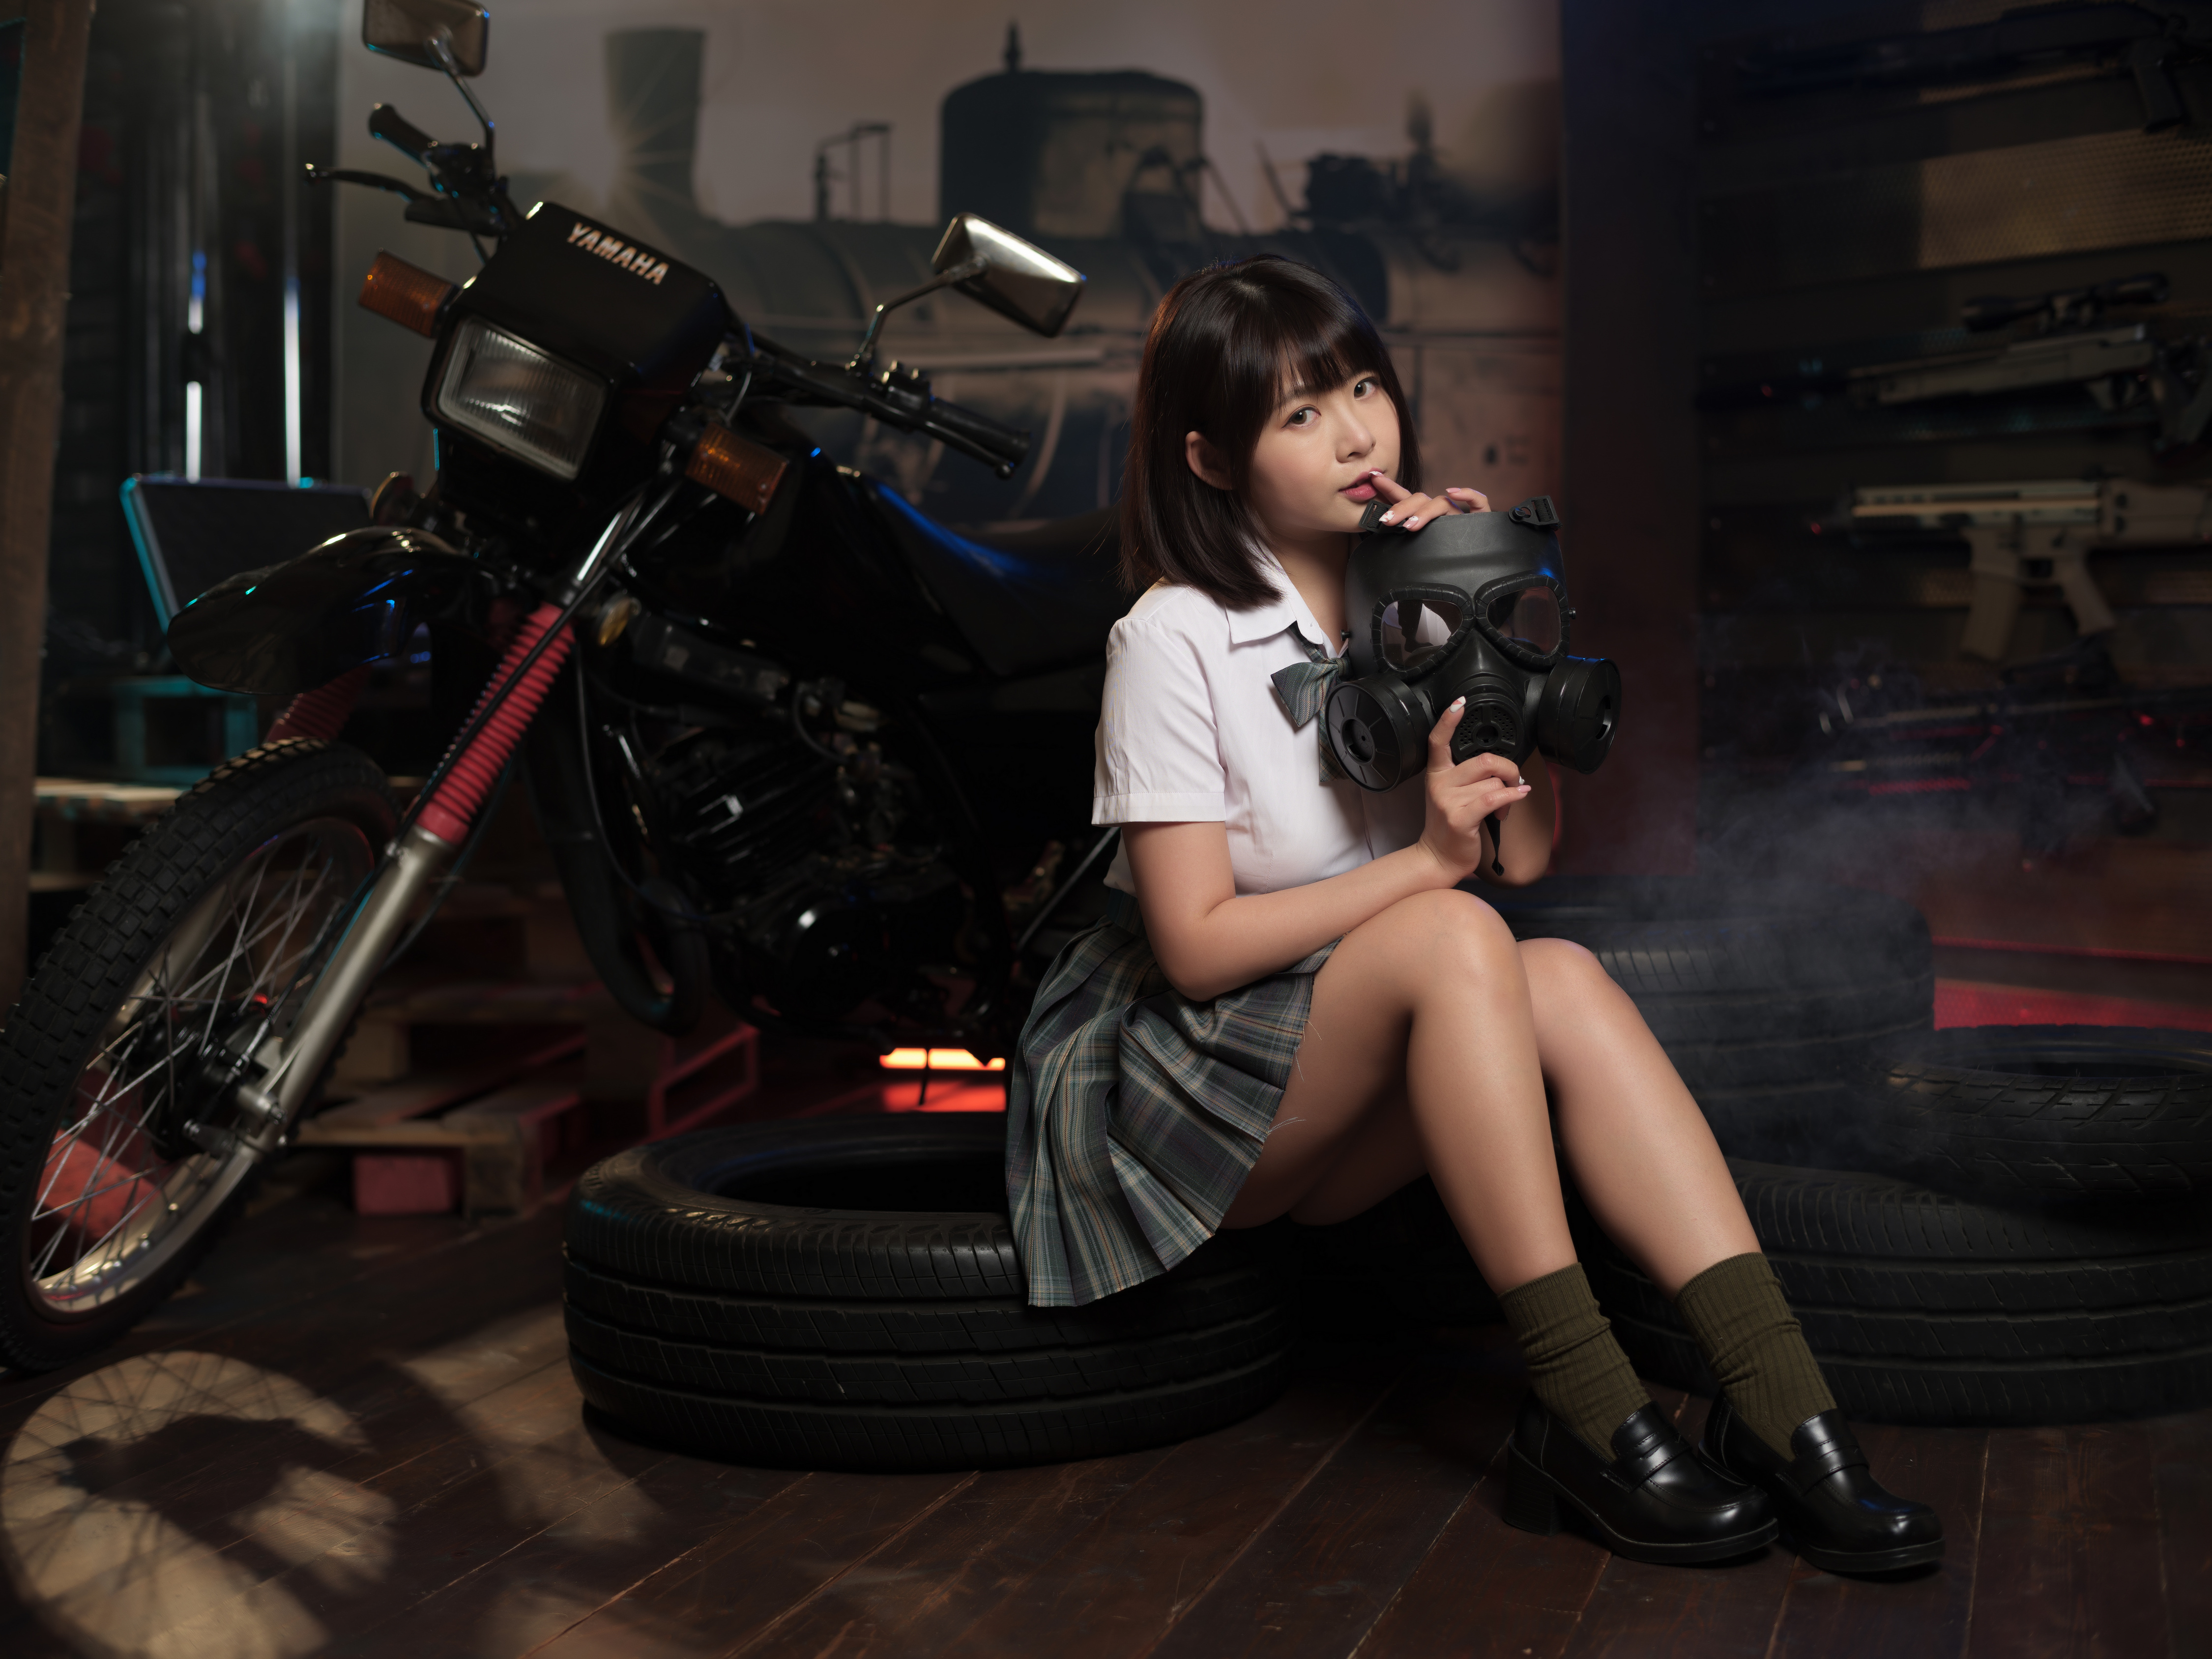 Девочка азиатской внешности на фоне кроссового мотоцикла